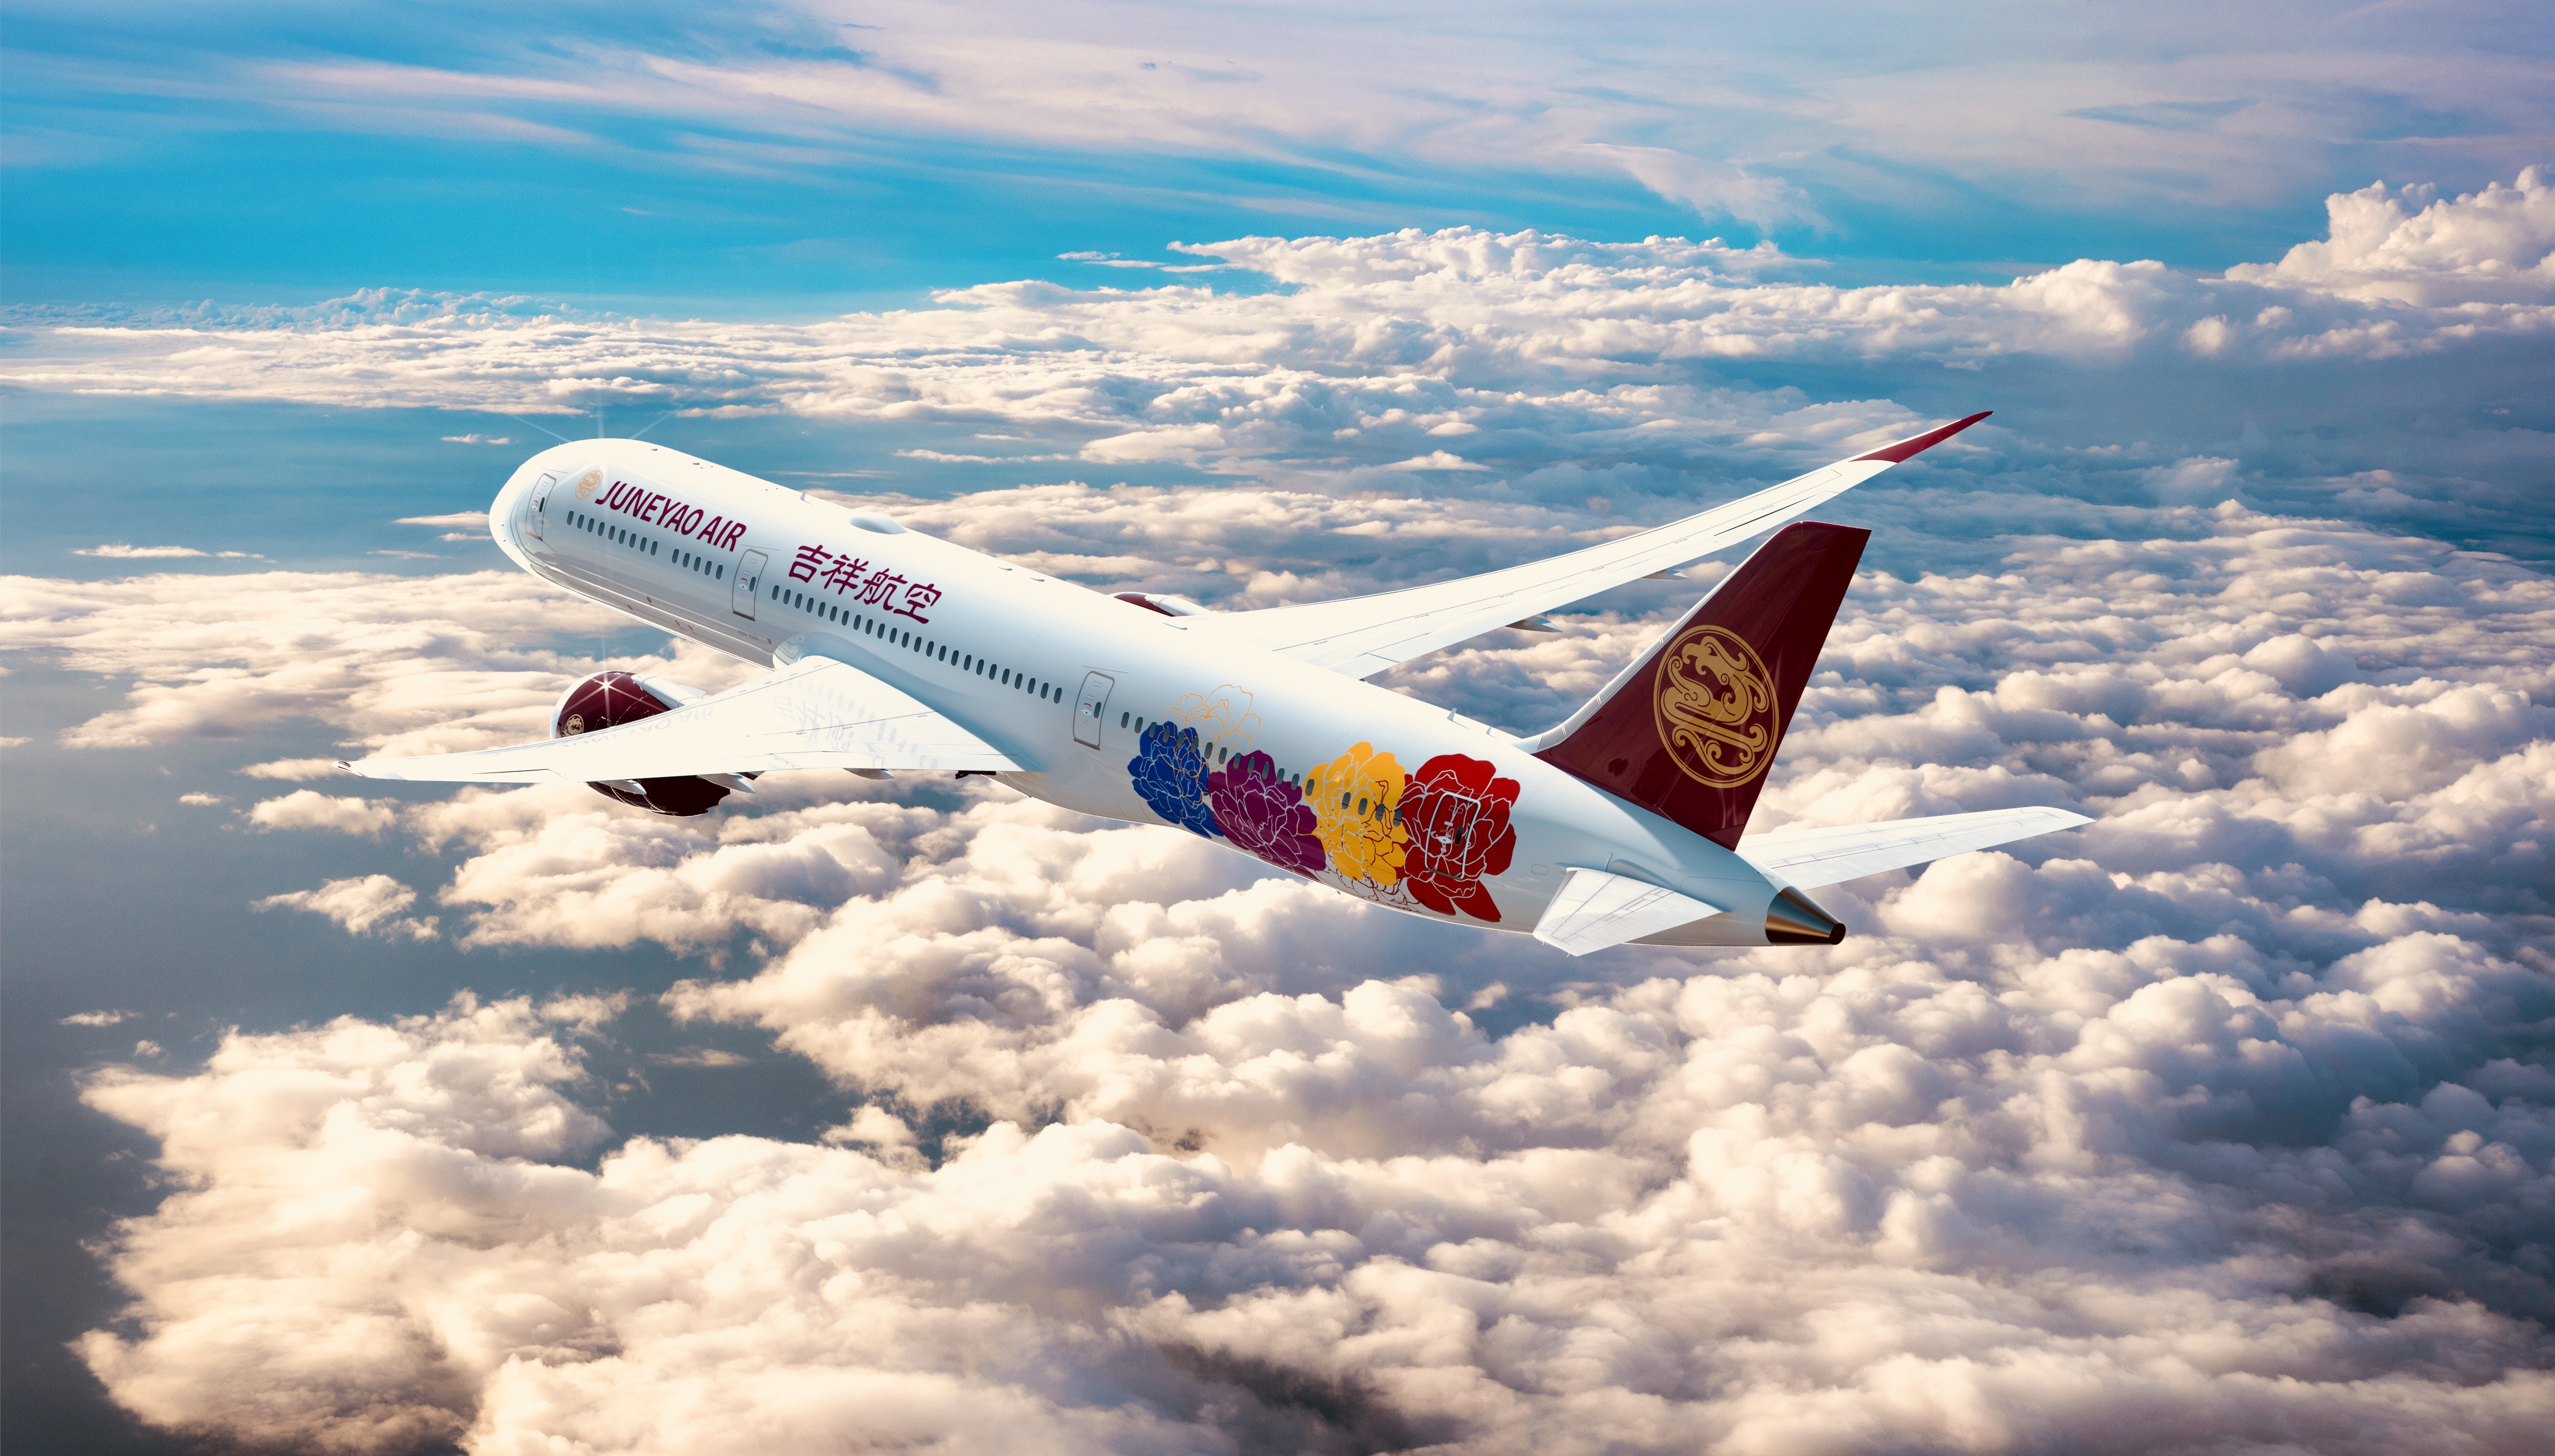 吉祥航空首架787客机将采用“中国牡丹”彩绘设计